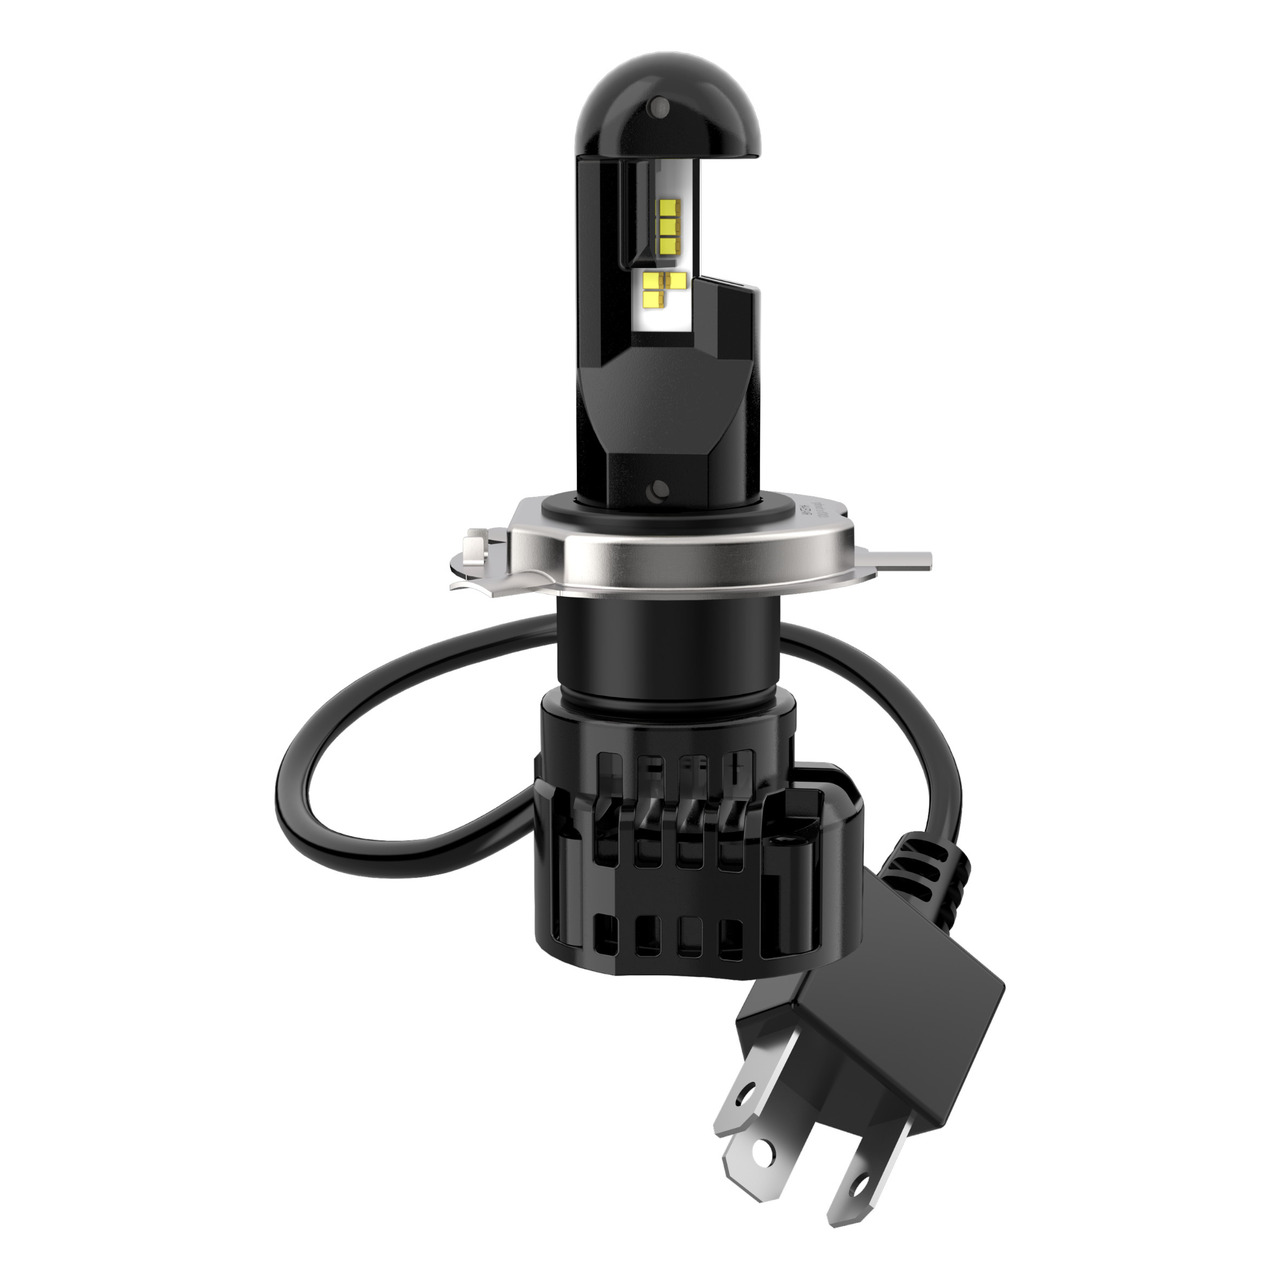 OSRAM H4-Retrofit-LED-Nachrüstlampe NIGHT BREAKER(R) für Motorräder- 1650 lm- mit StVZO-Zulassung unter KFZ